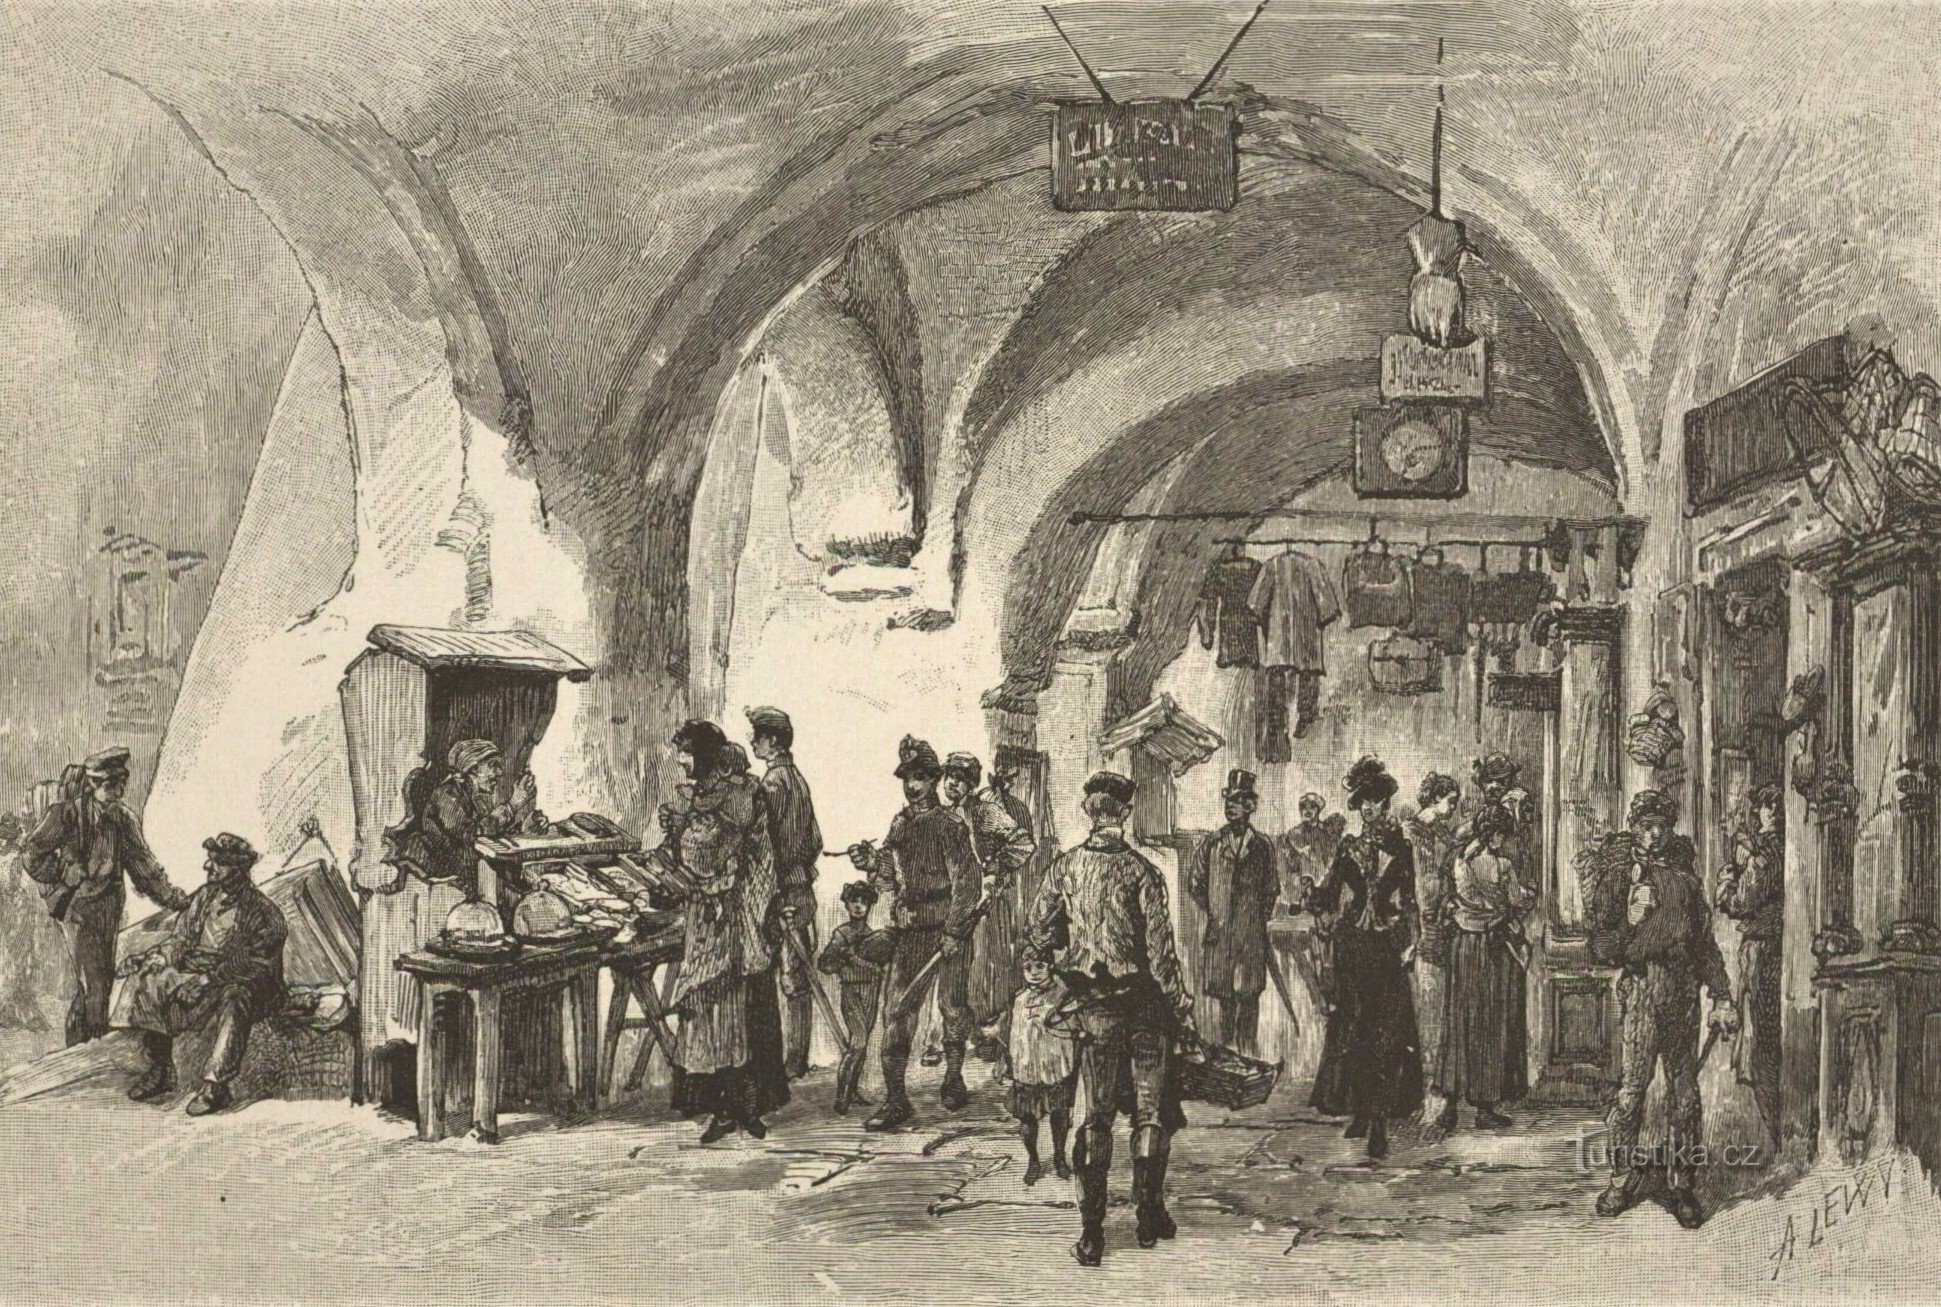 Великий зал у Градець-Кралове близько 1880 року